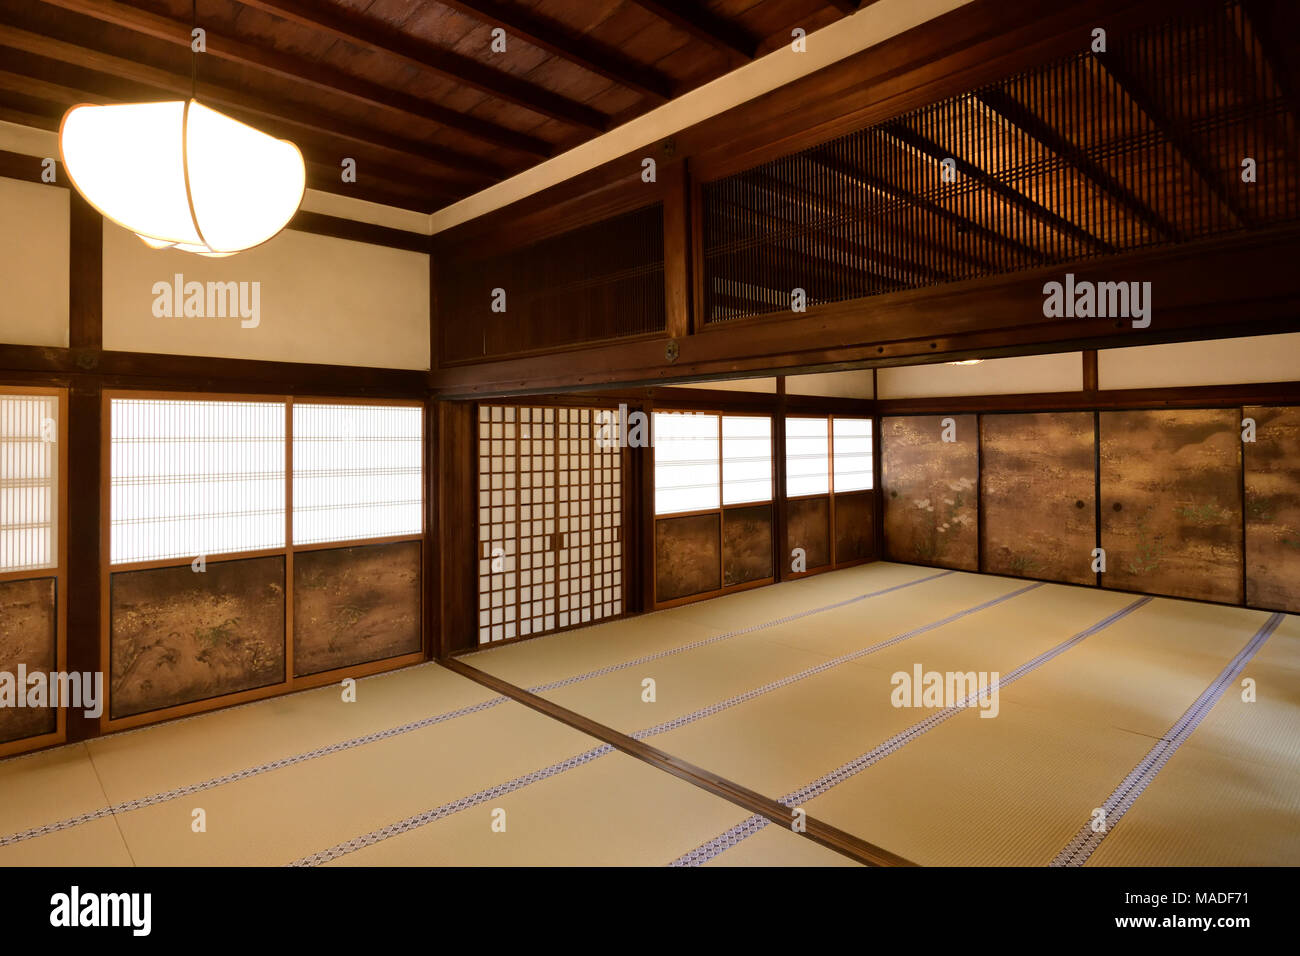 Tradizionale Giapponese del temple hall interno con tatami e dipinto di shoji degli schermi scorrevoli. Sanboin tempio buddista, sub-tempio del complesso Daigoji ho Foto Stock